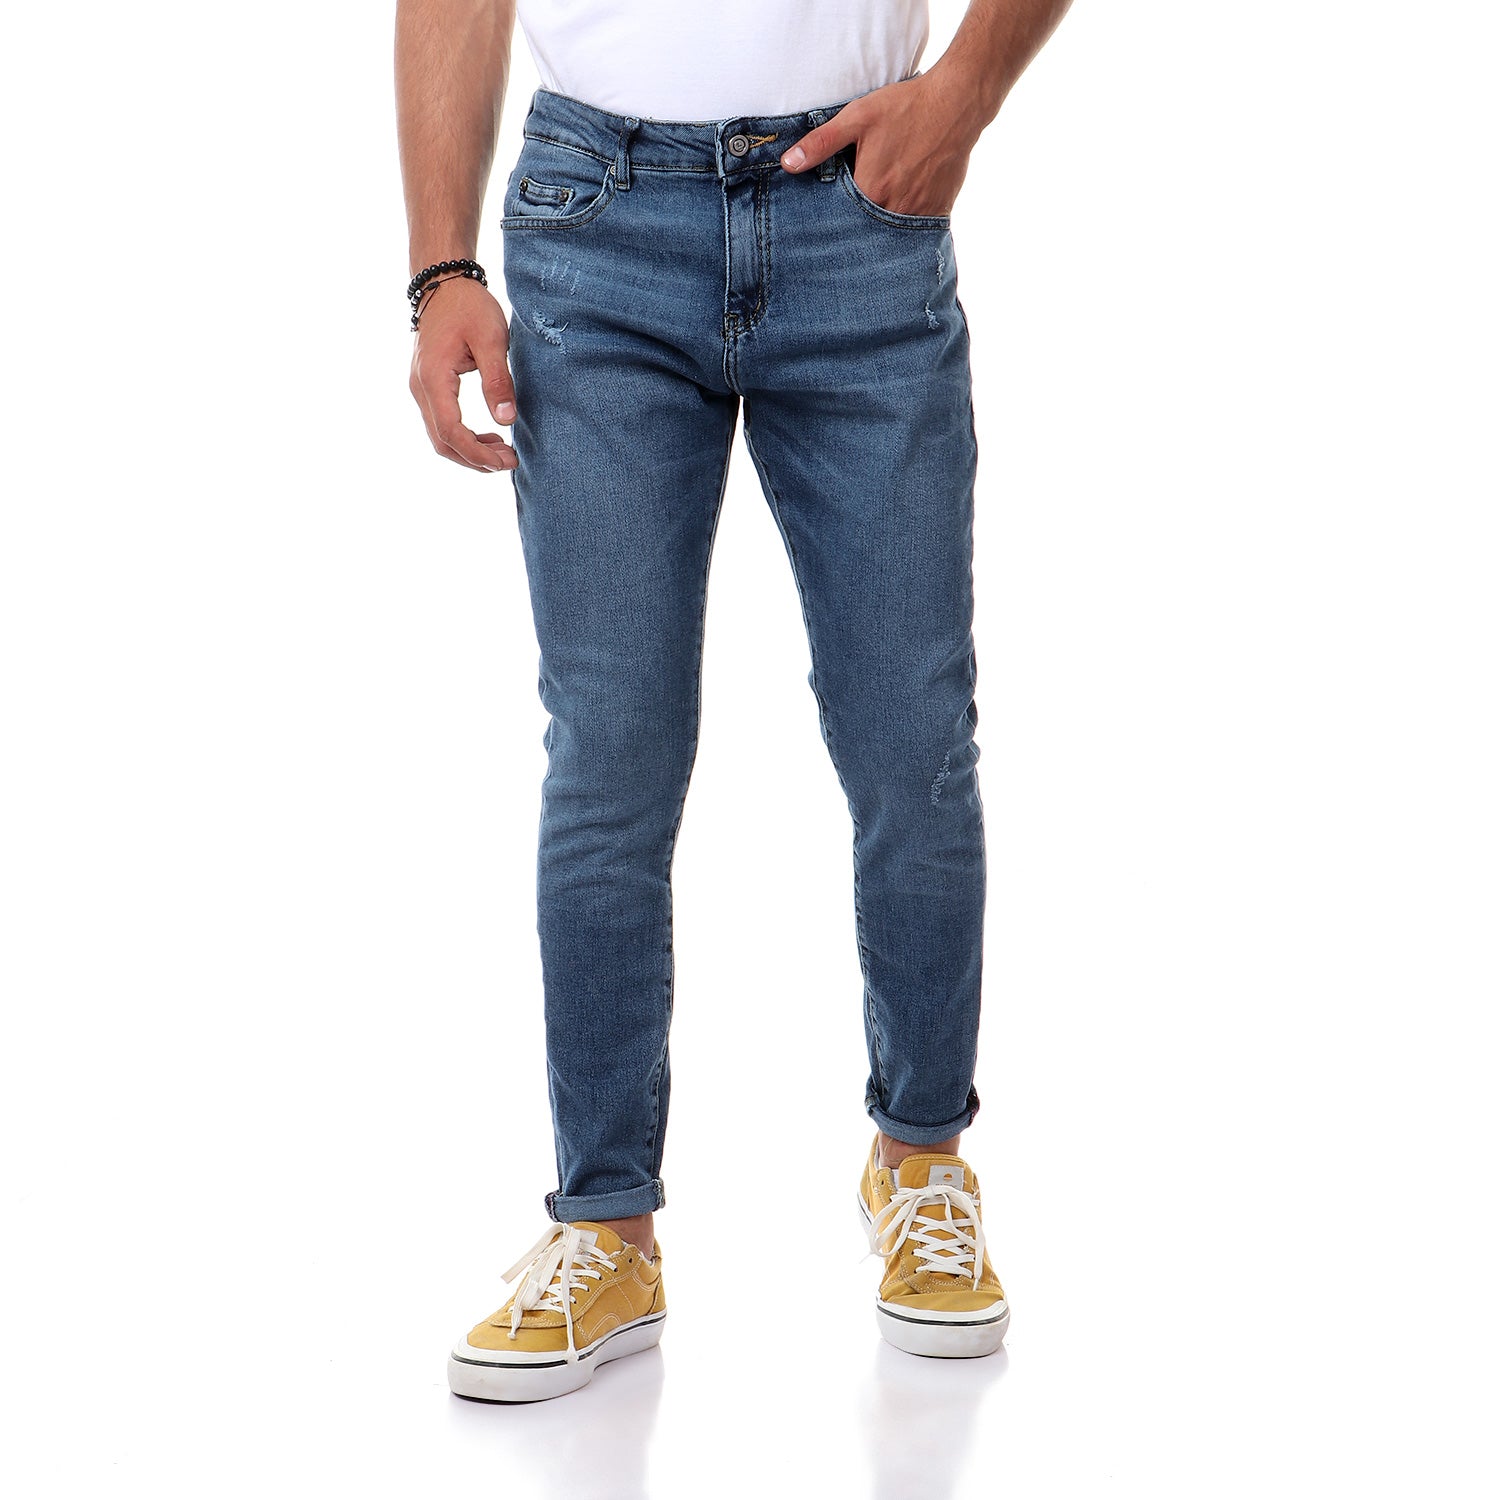 Regular Fit Jeans For Men -110512003